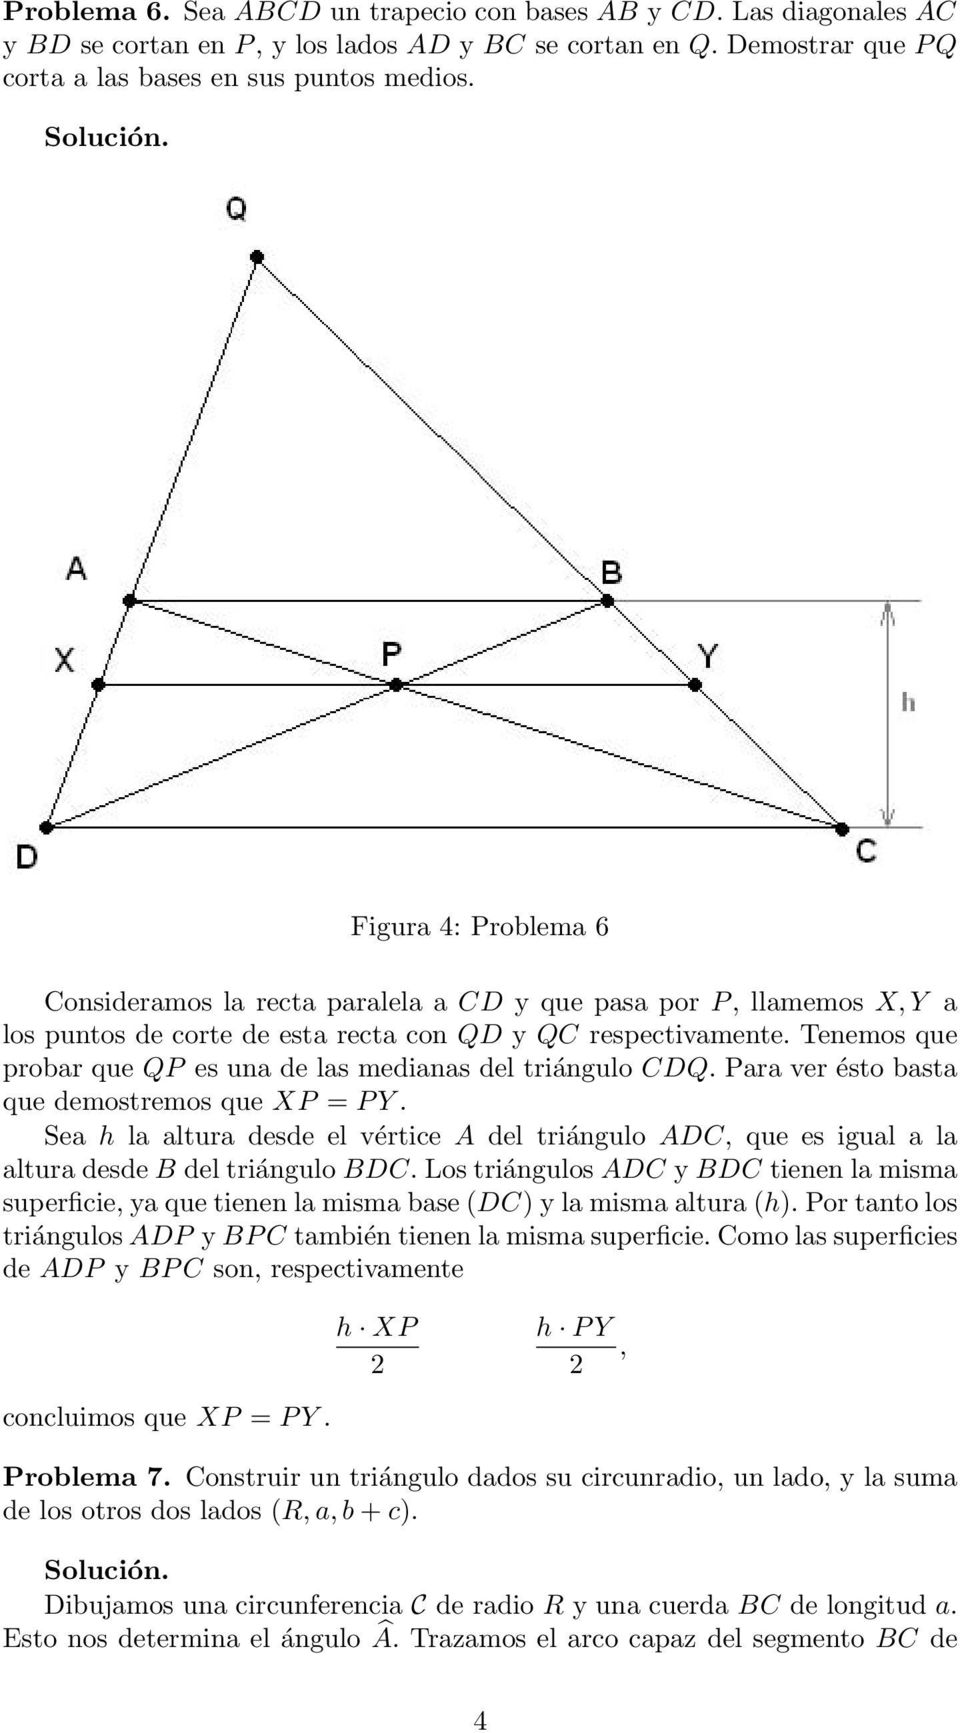 Tenemos que probar que QP es una de las medianas del triángulo CDQ. Para ver ésto basta que demostremos que XP = P Y.